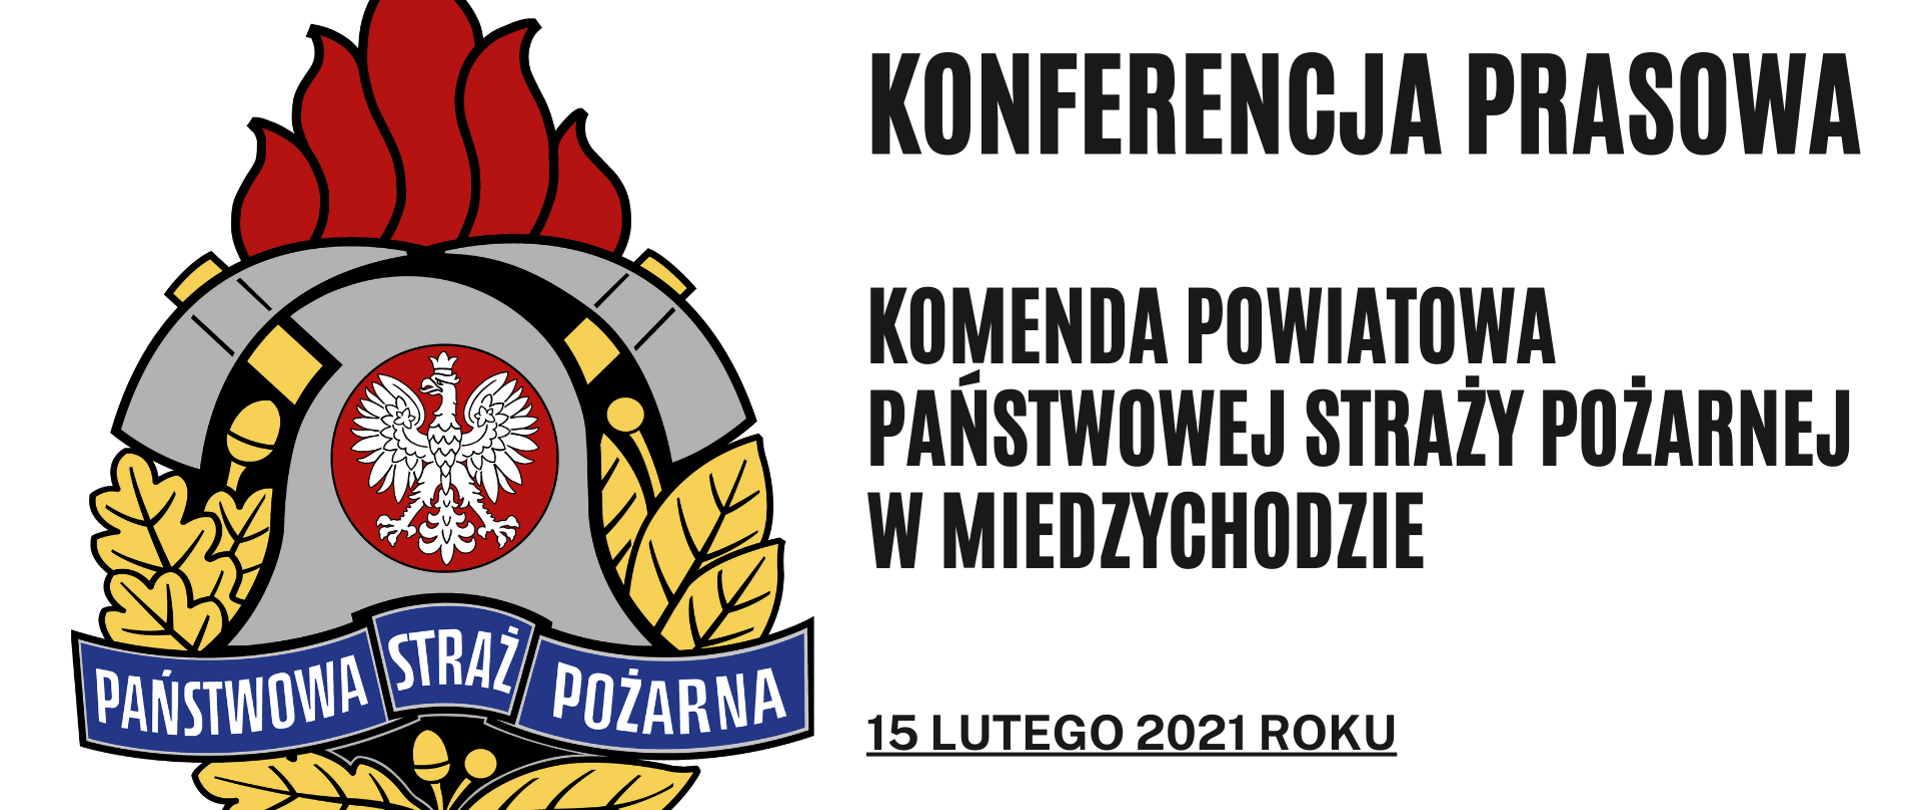 Konferencja prasowa - Komenda Powiatowa PSP w Międzychodzie - 15.02.2021 r.